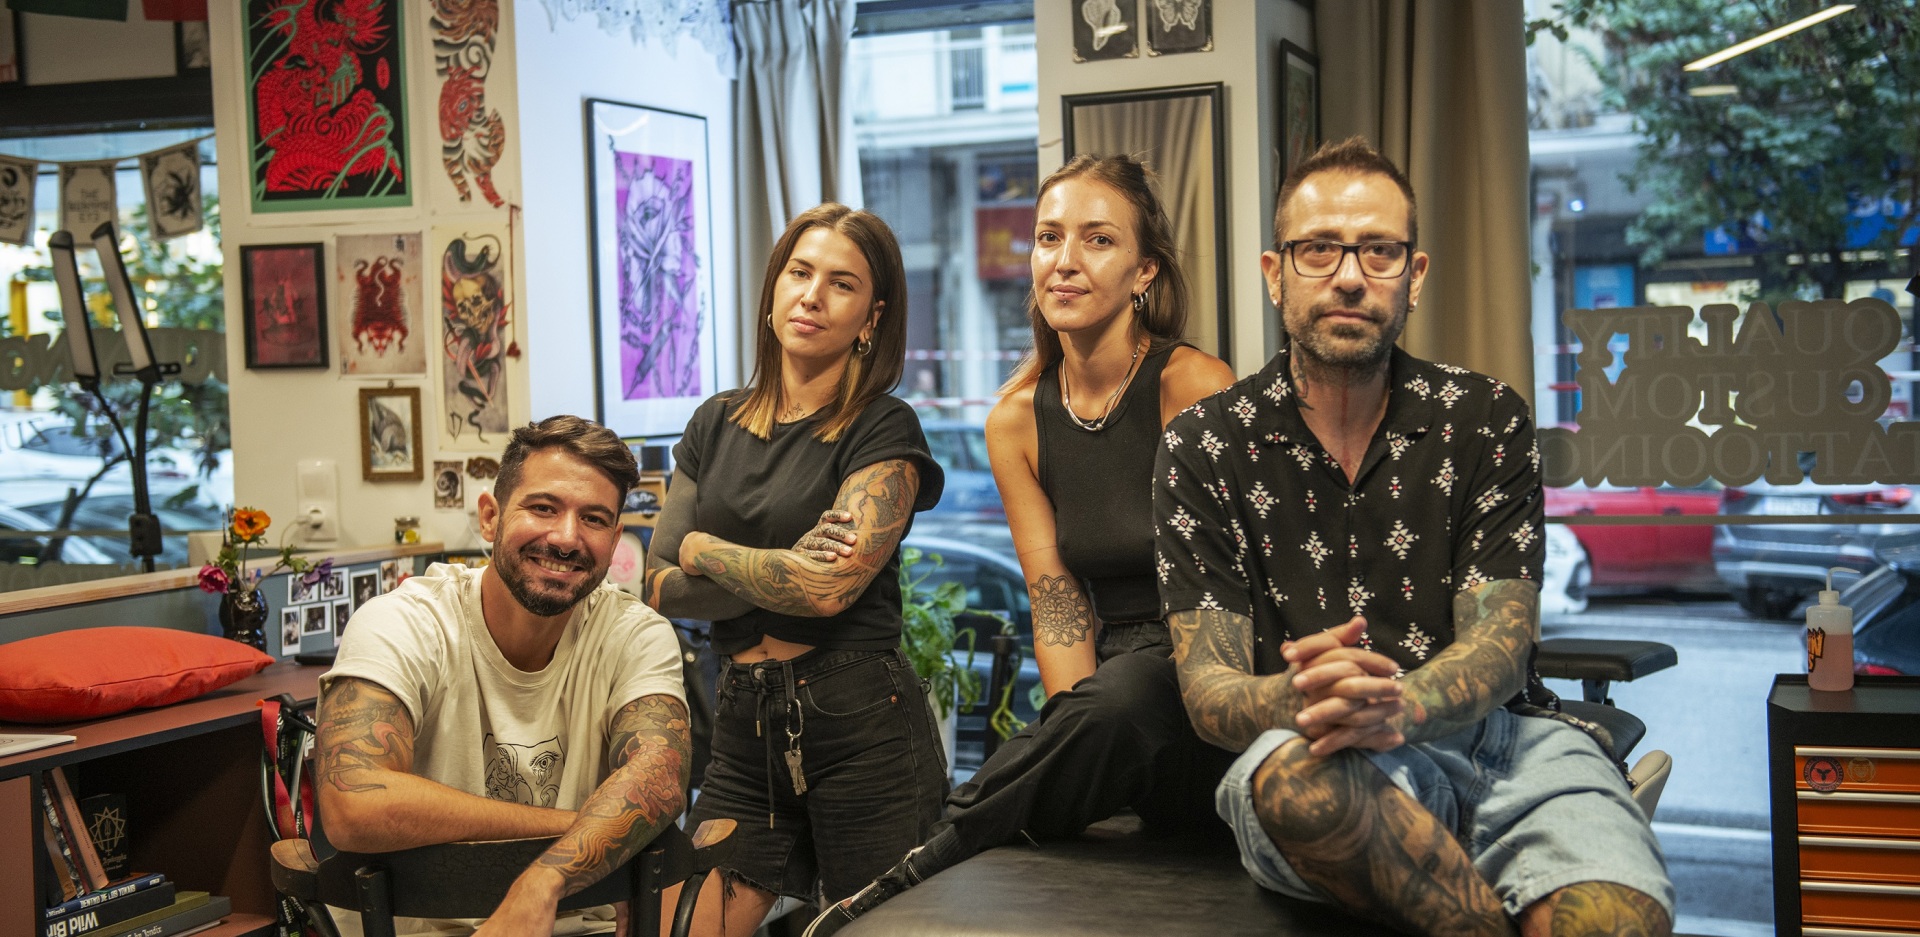 The Burning Eye Tattoo: Ο νέος χώρος για το τατουάζ που οραματίστηκαν οι Amok, Bloody Mary, Leah και Live2